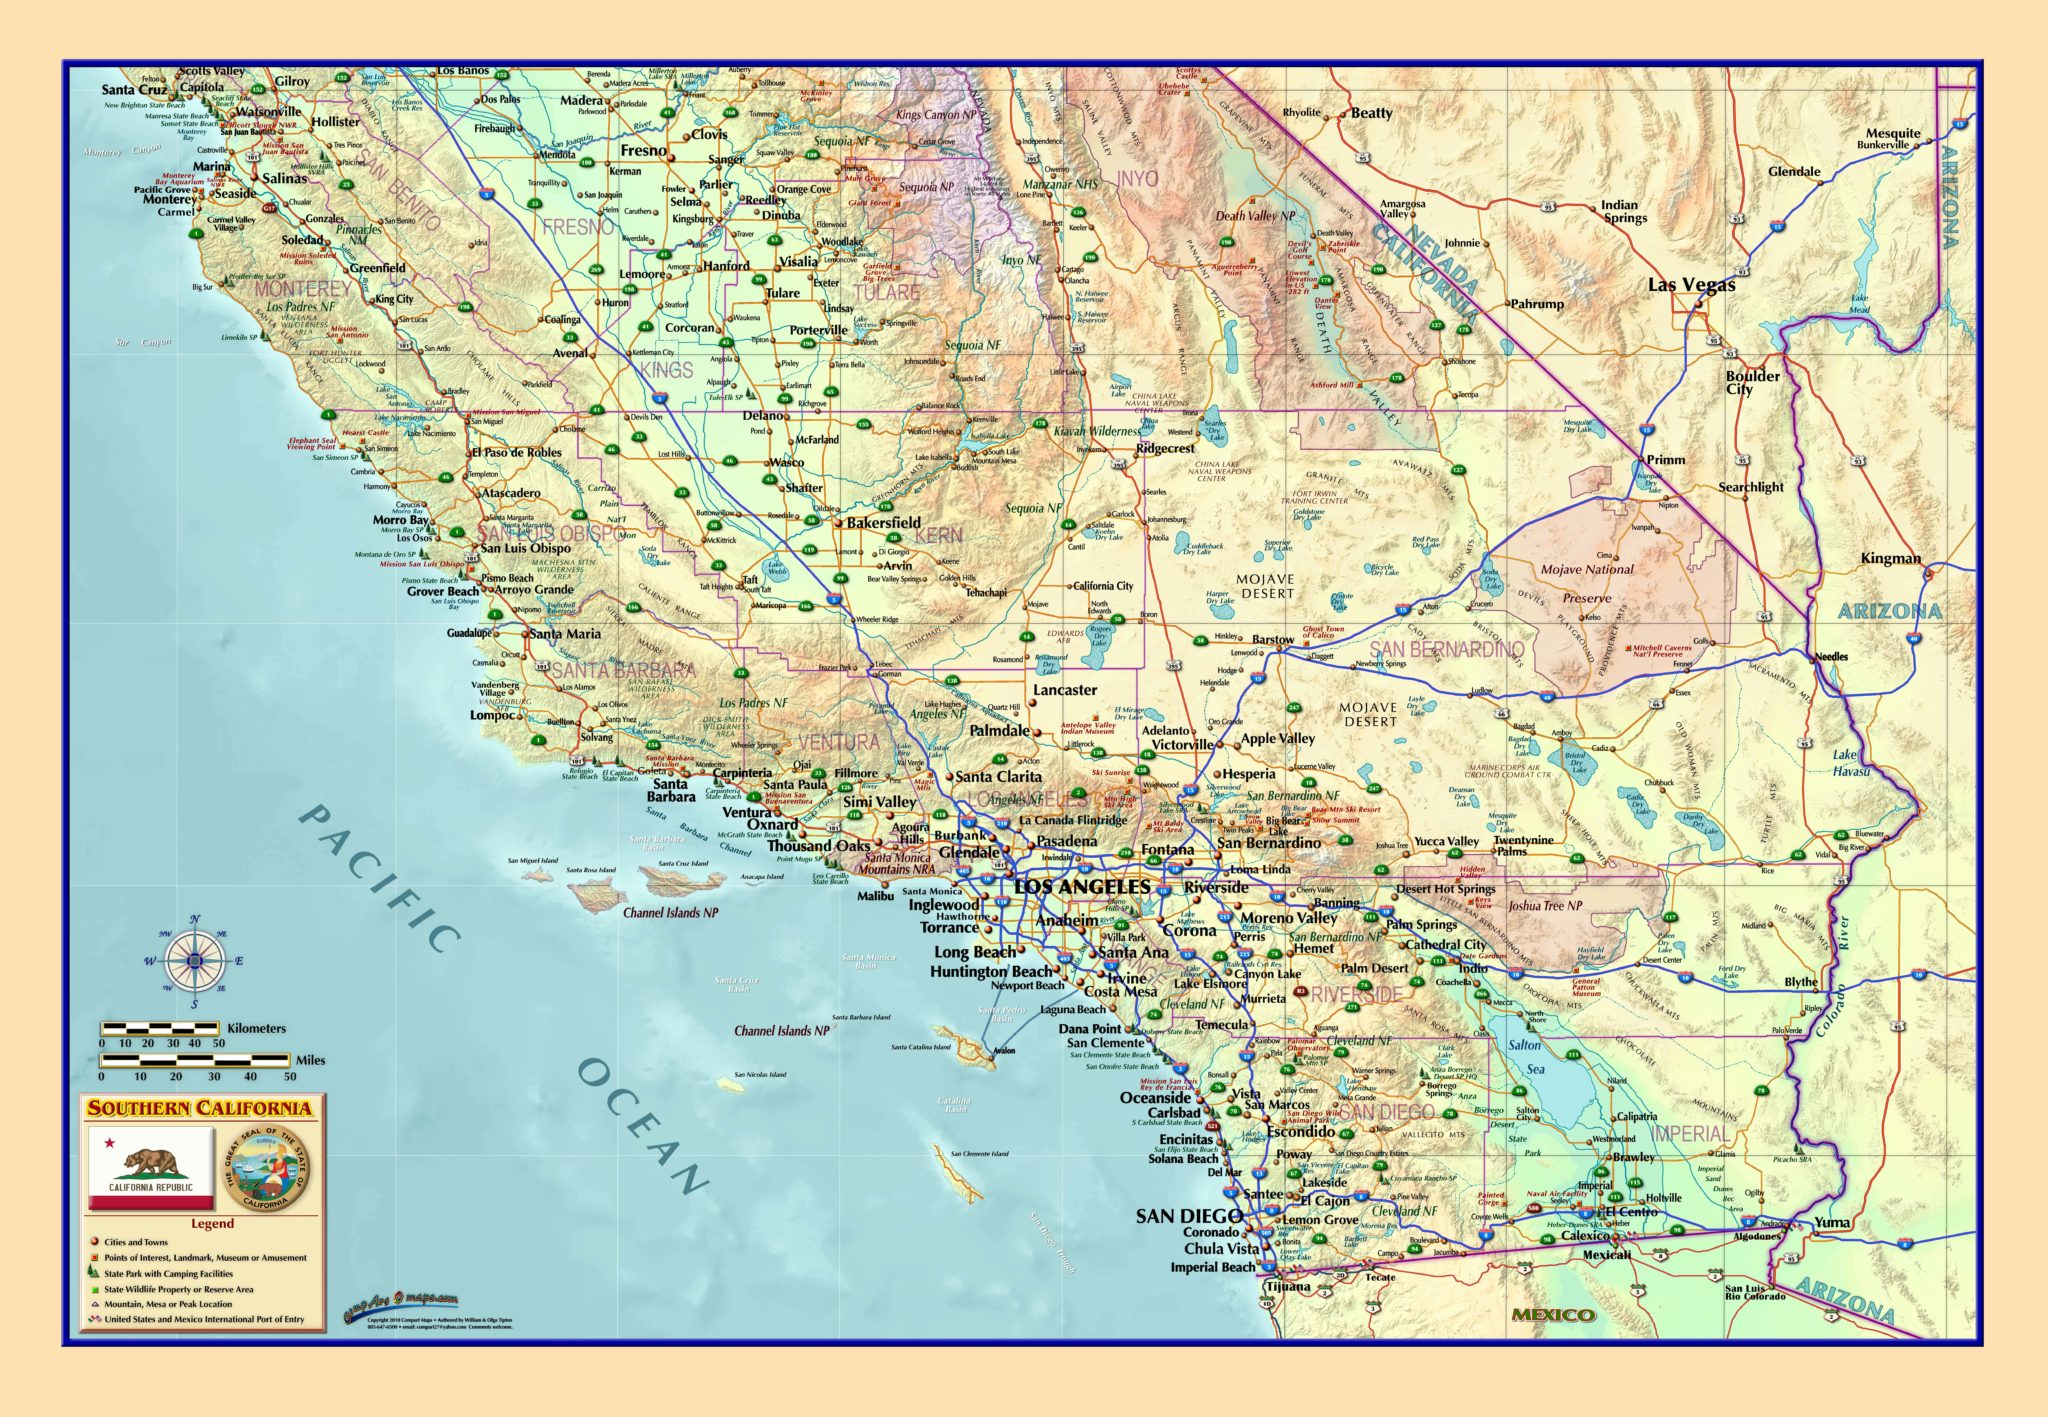 Southern California Wall Map - The Map Shop - Laminated California Wall Map